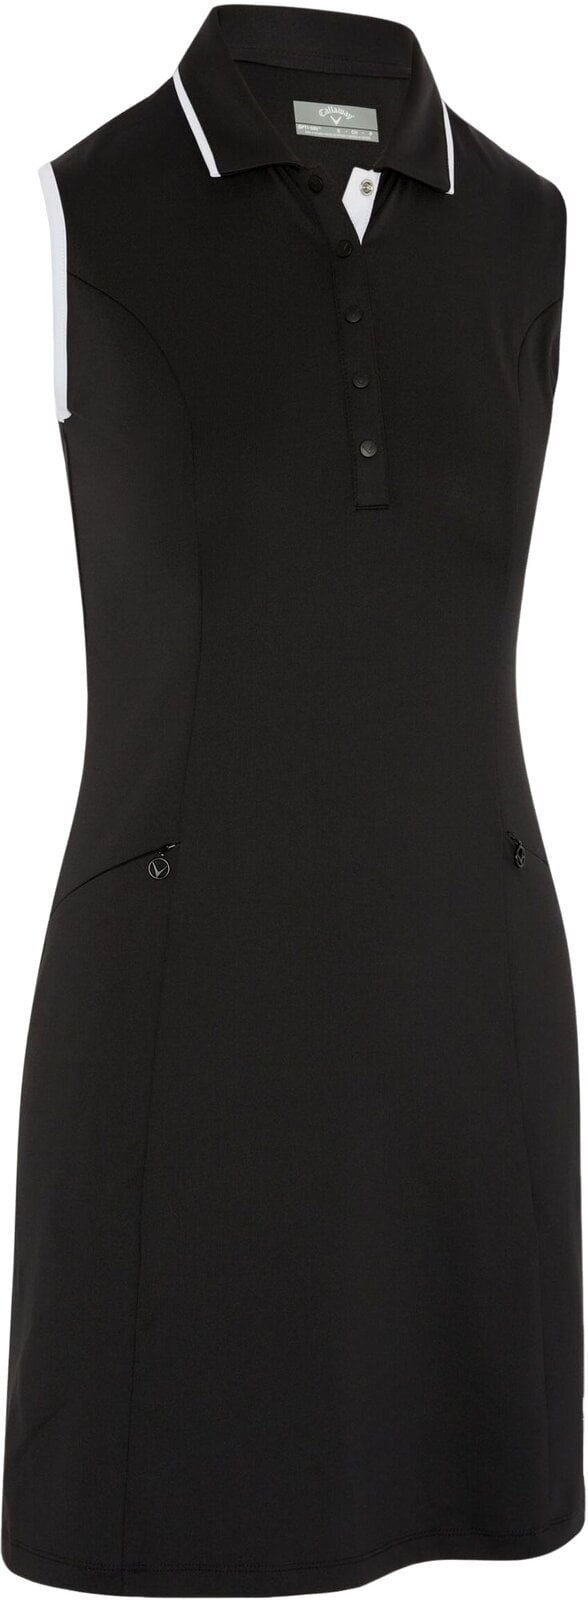 Skirt / Dress Callaway Womens Sleeveless Dress With Snap Placket Caviar XS